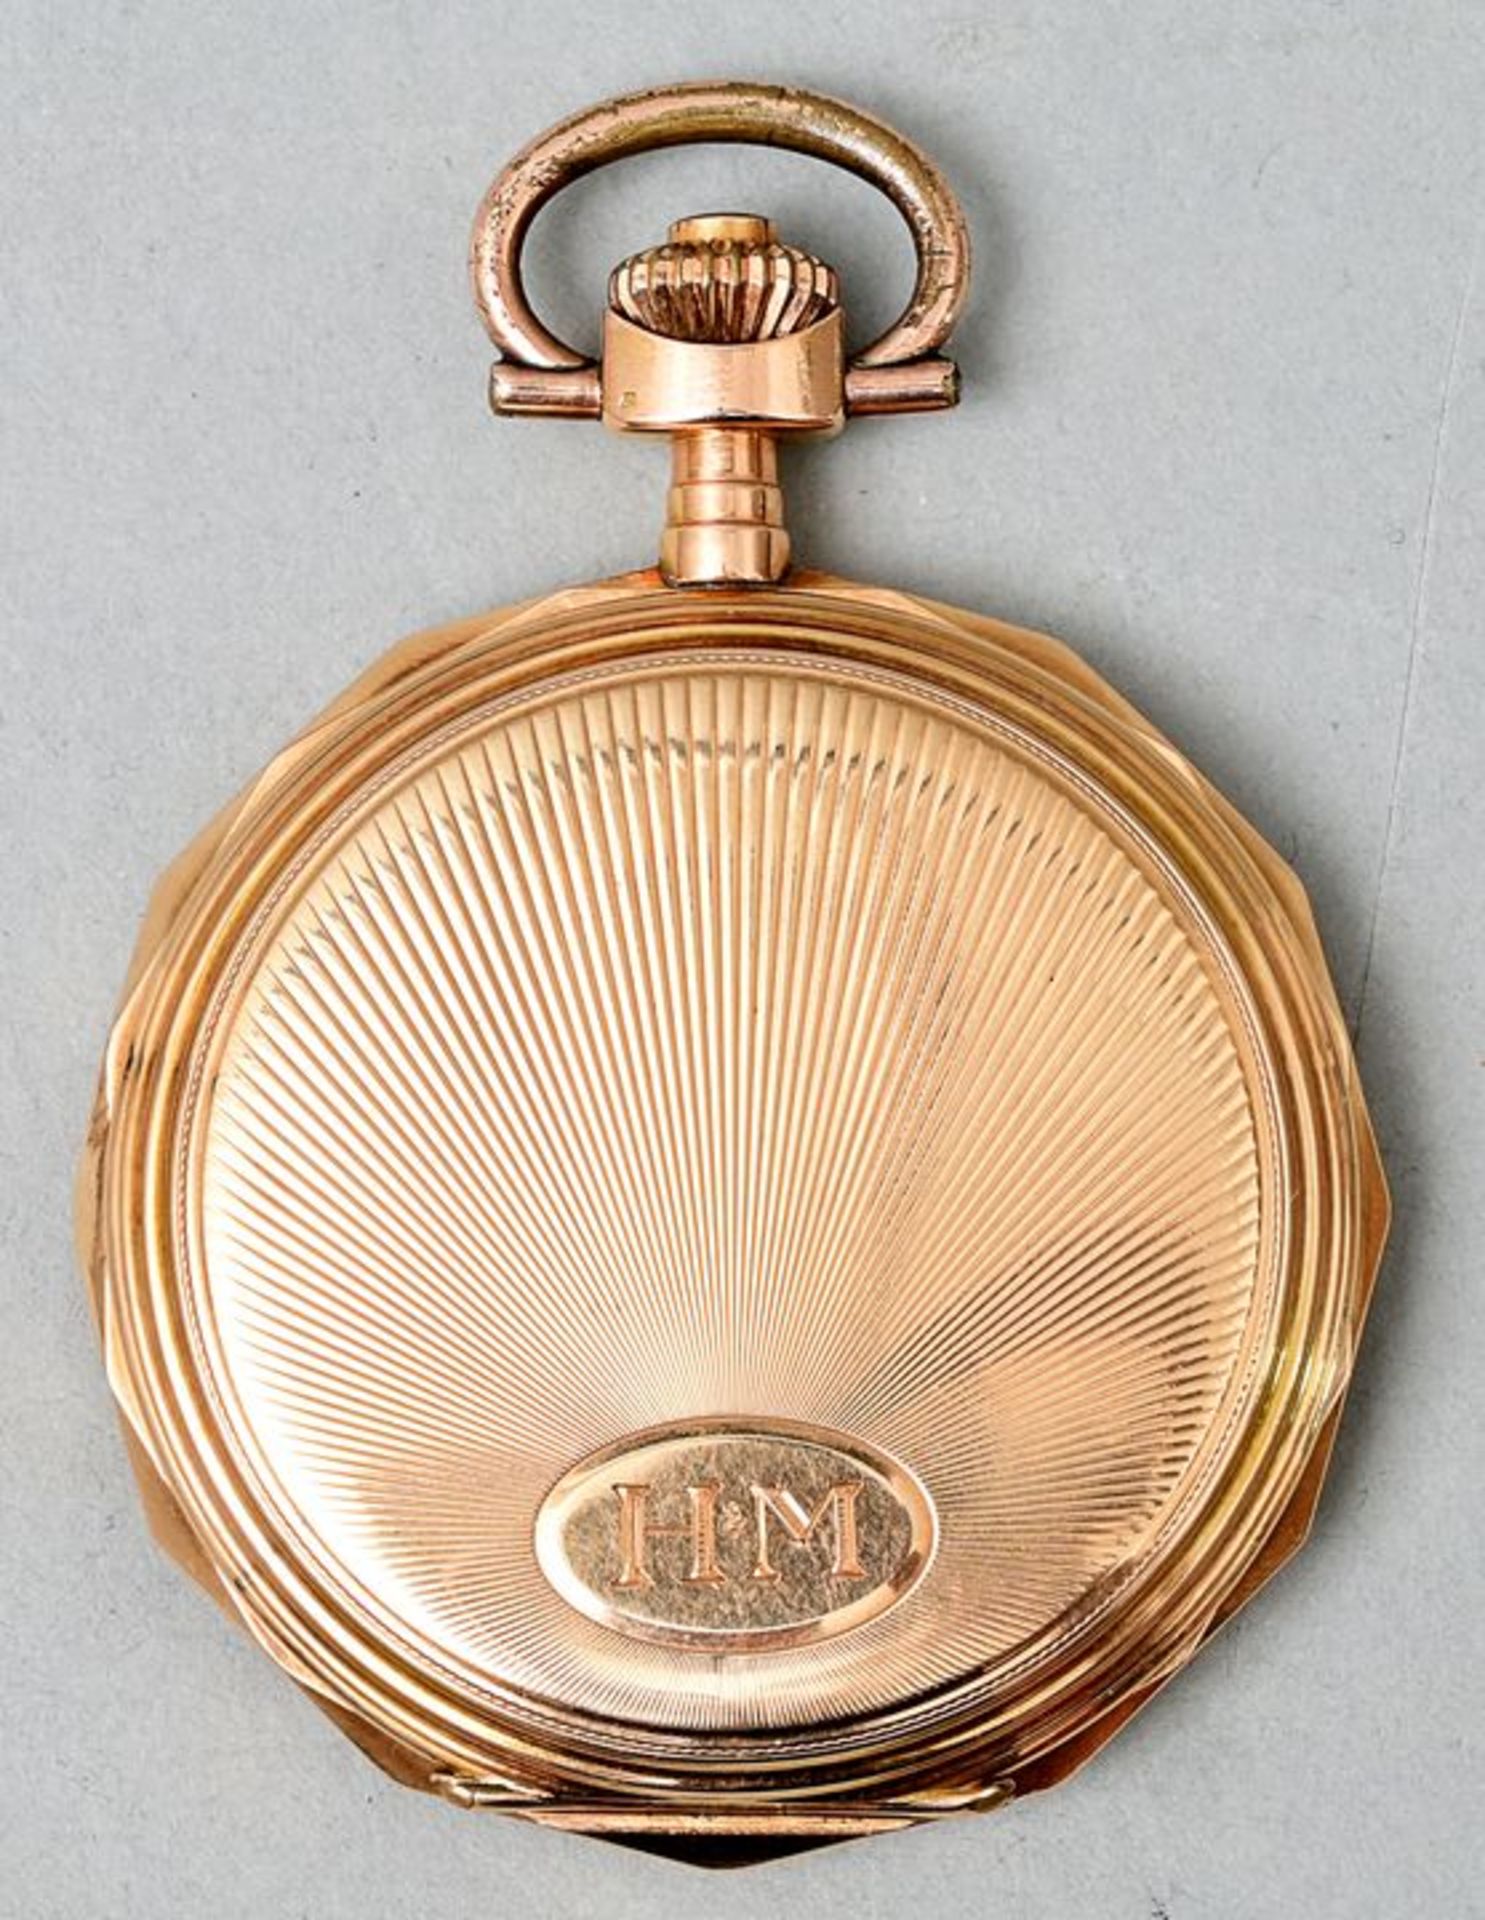 Goldene Taschenuhr/ golden pocket watch - Bild 5 aus 5